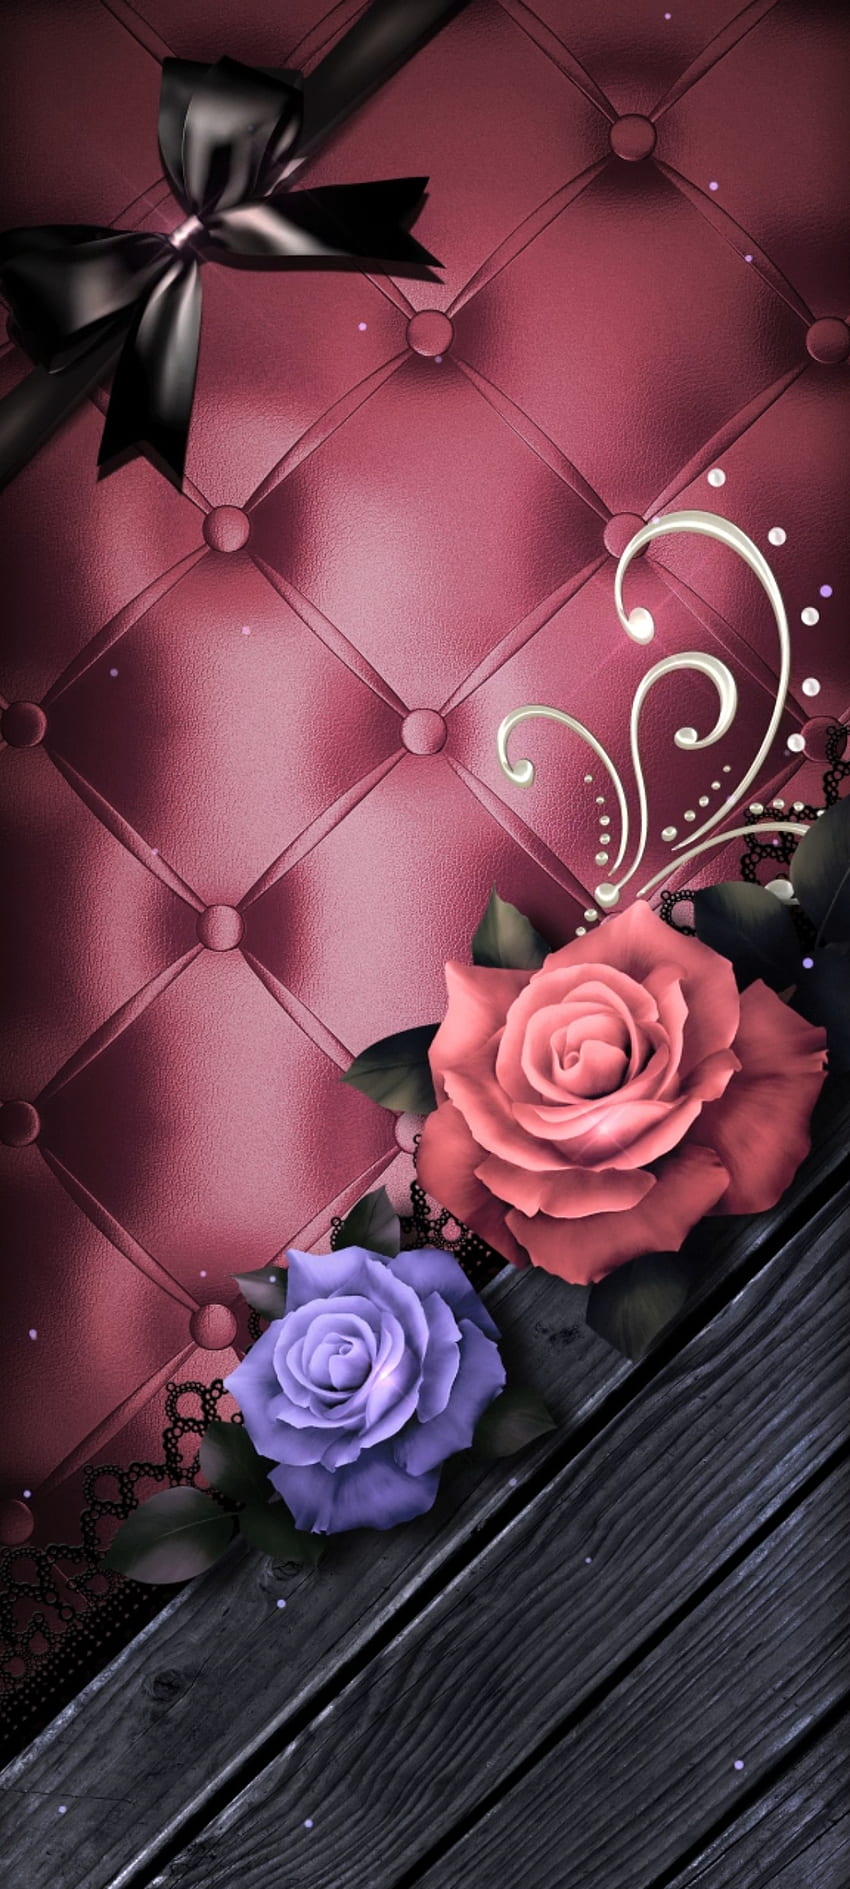 Perbatasan kulit mawar, mawar teh hibrida, merah muda, premium, gelap, mewah wallpaper ponsel HD